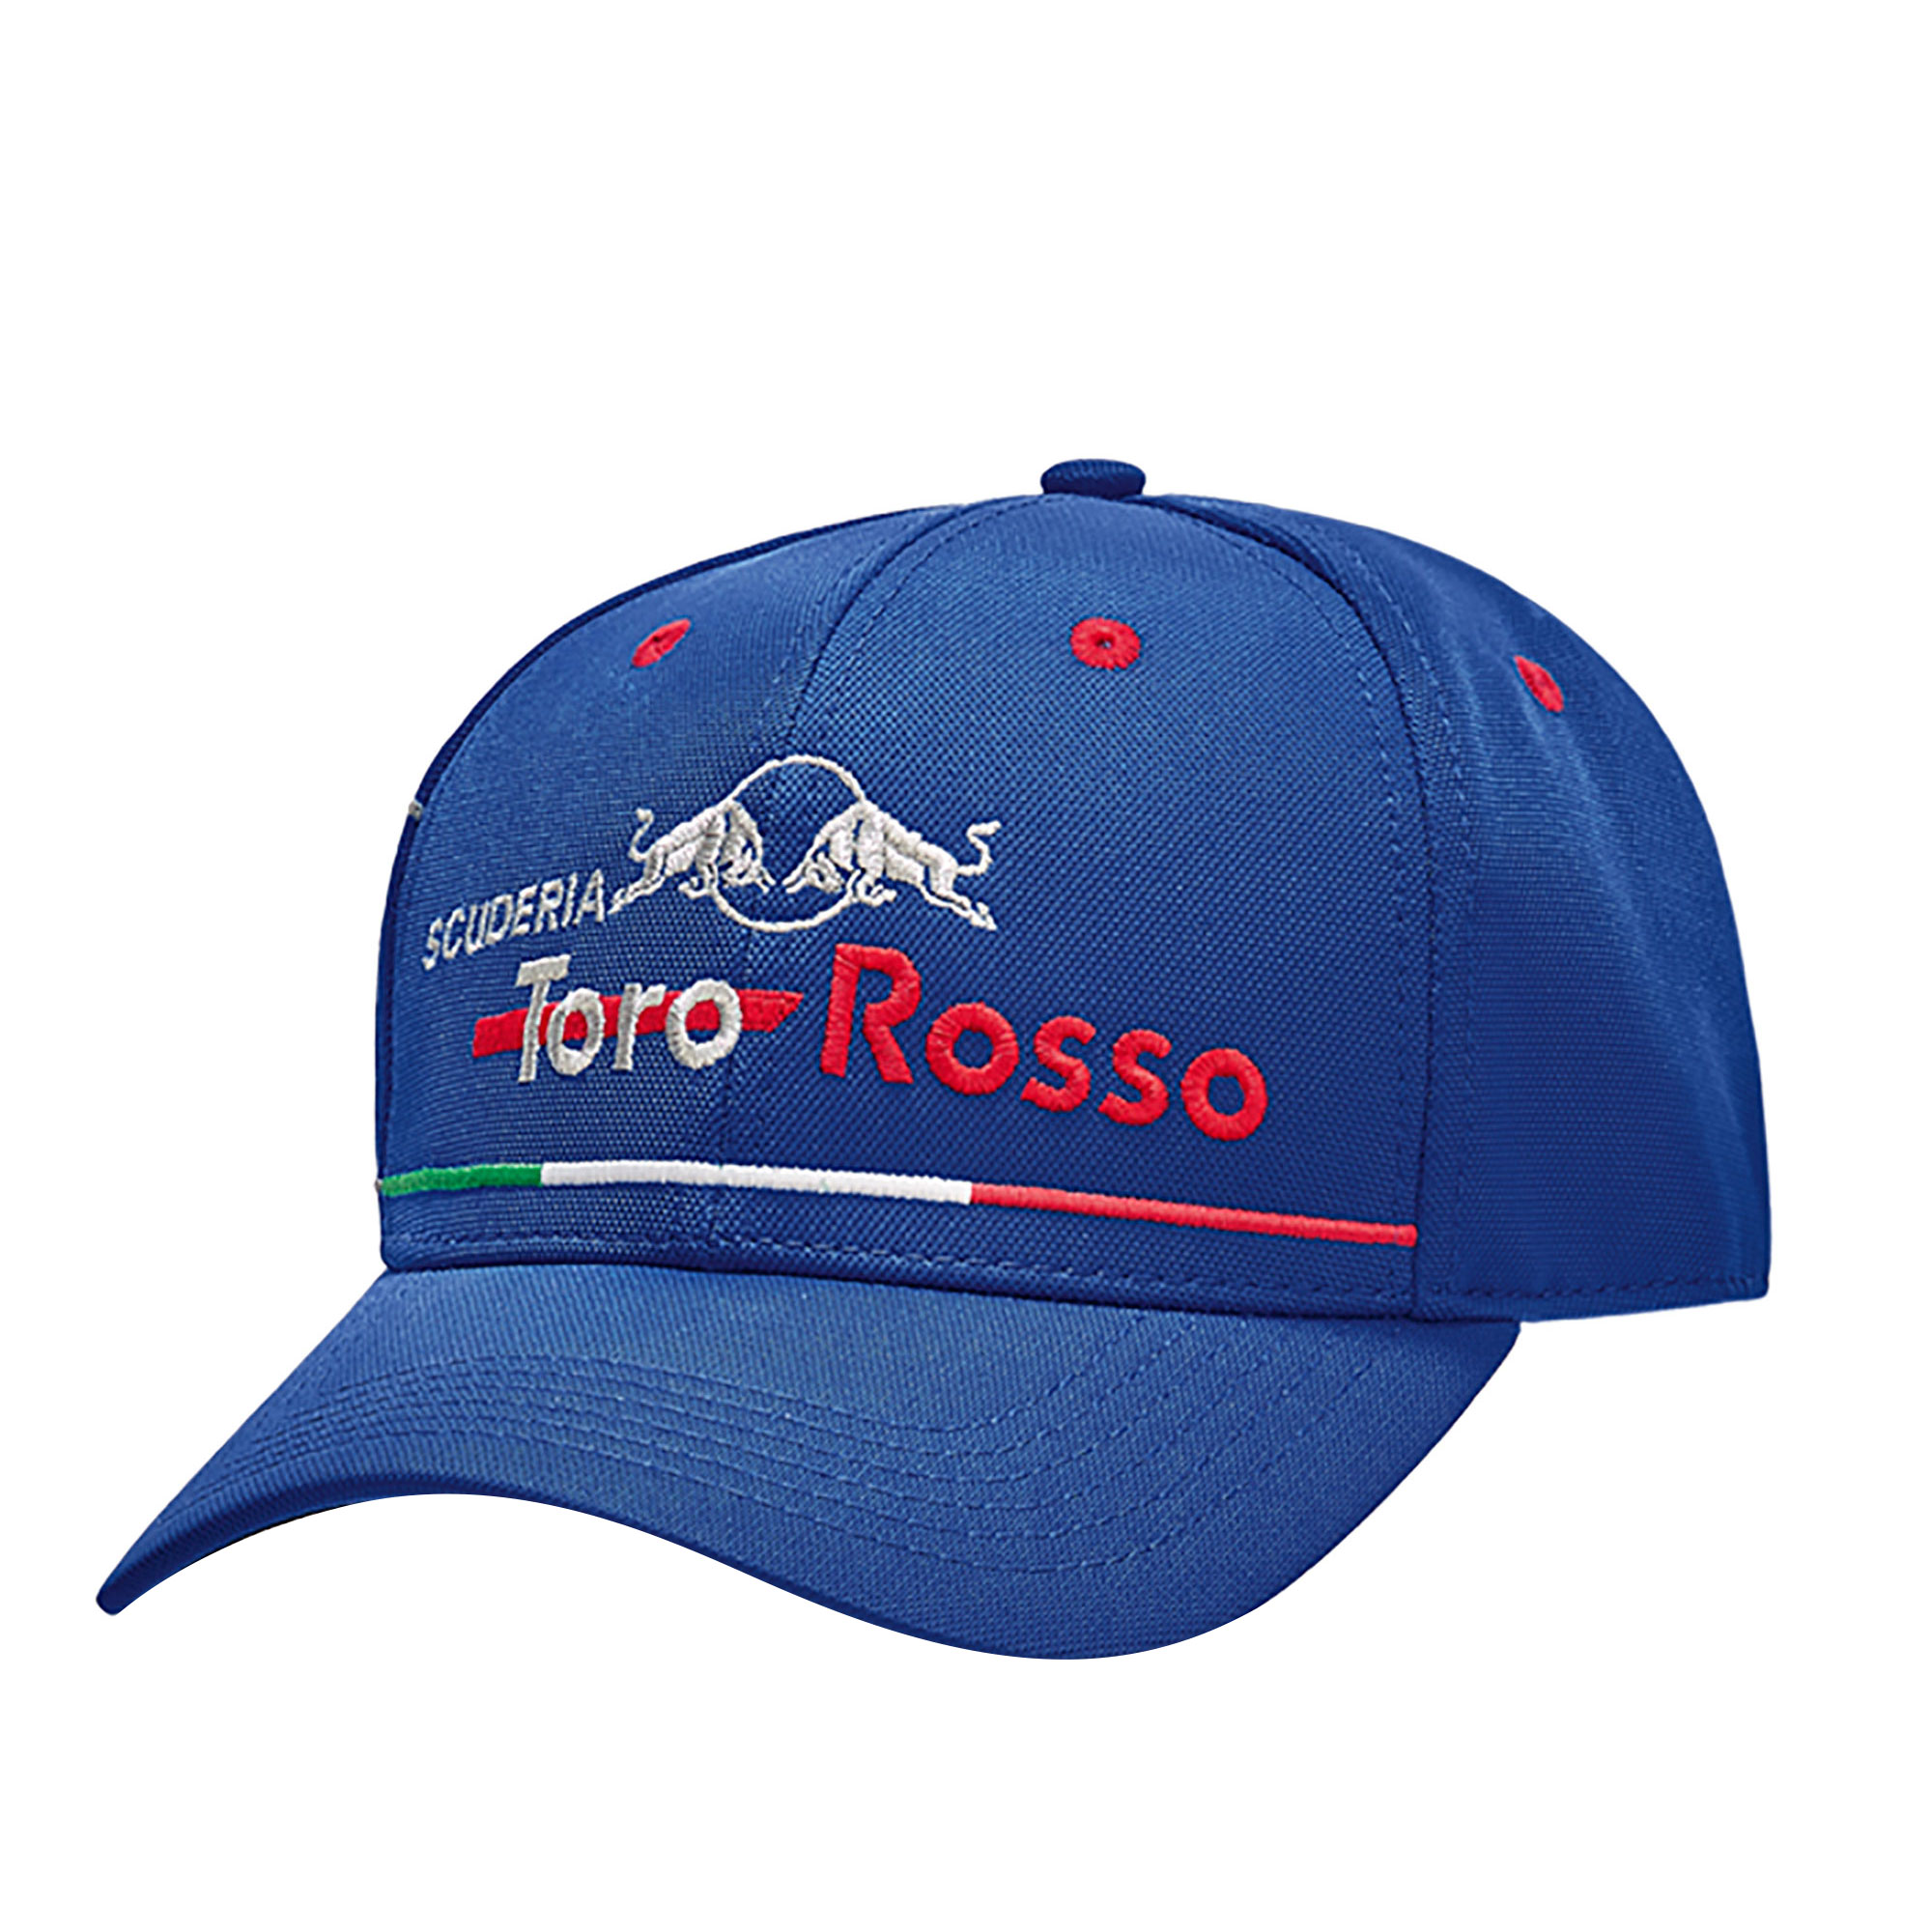 Mens Scuderia Toro Rosso F1 Italian Grand Prix Special Edition Baseball ...